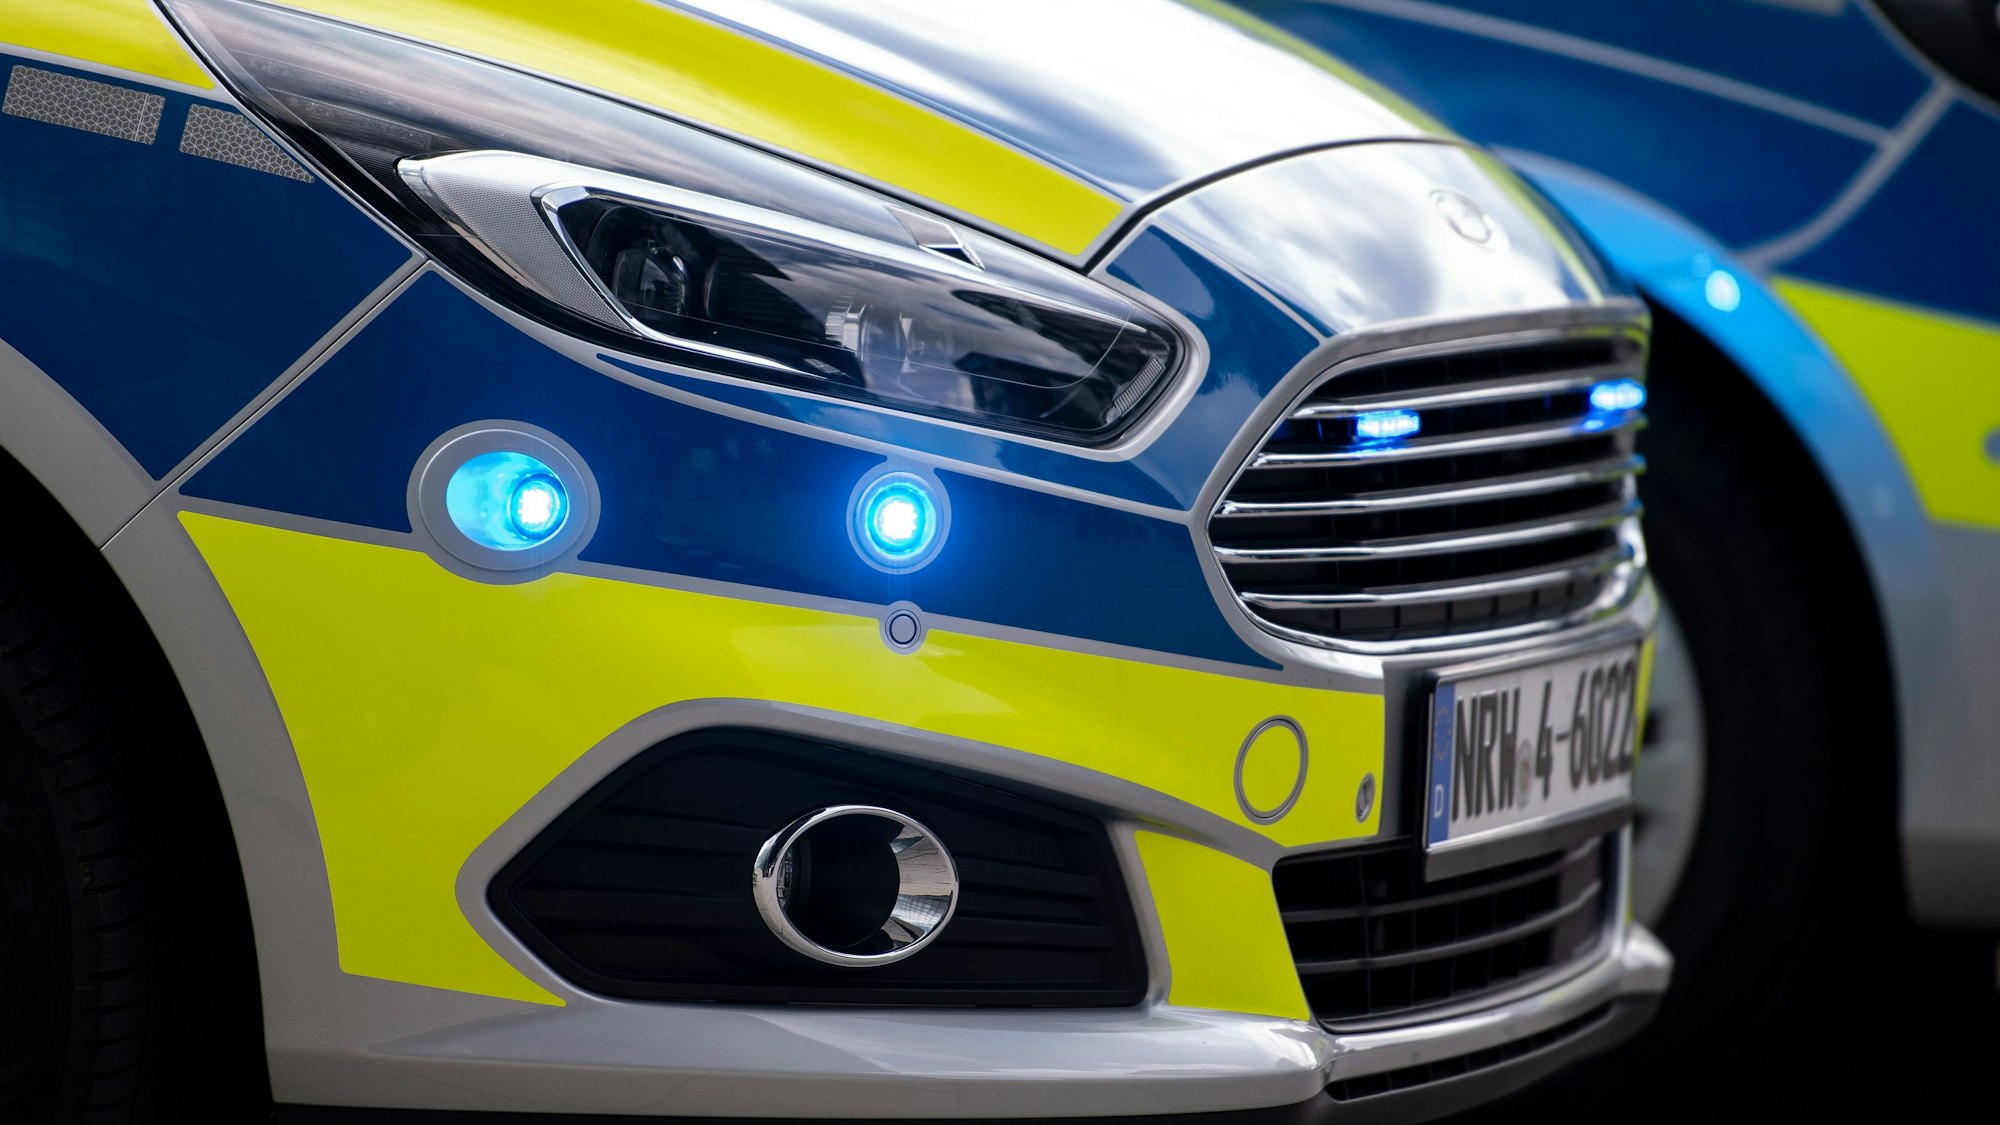 Blaulichter blinken an der Seite eines Polizeiwagens vom Typ Ford S-Max.